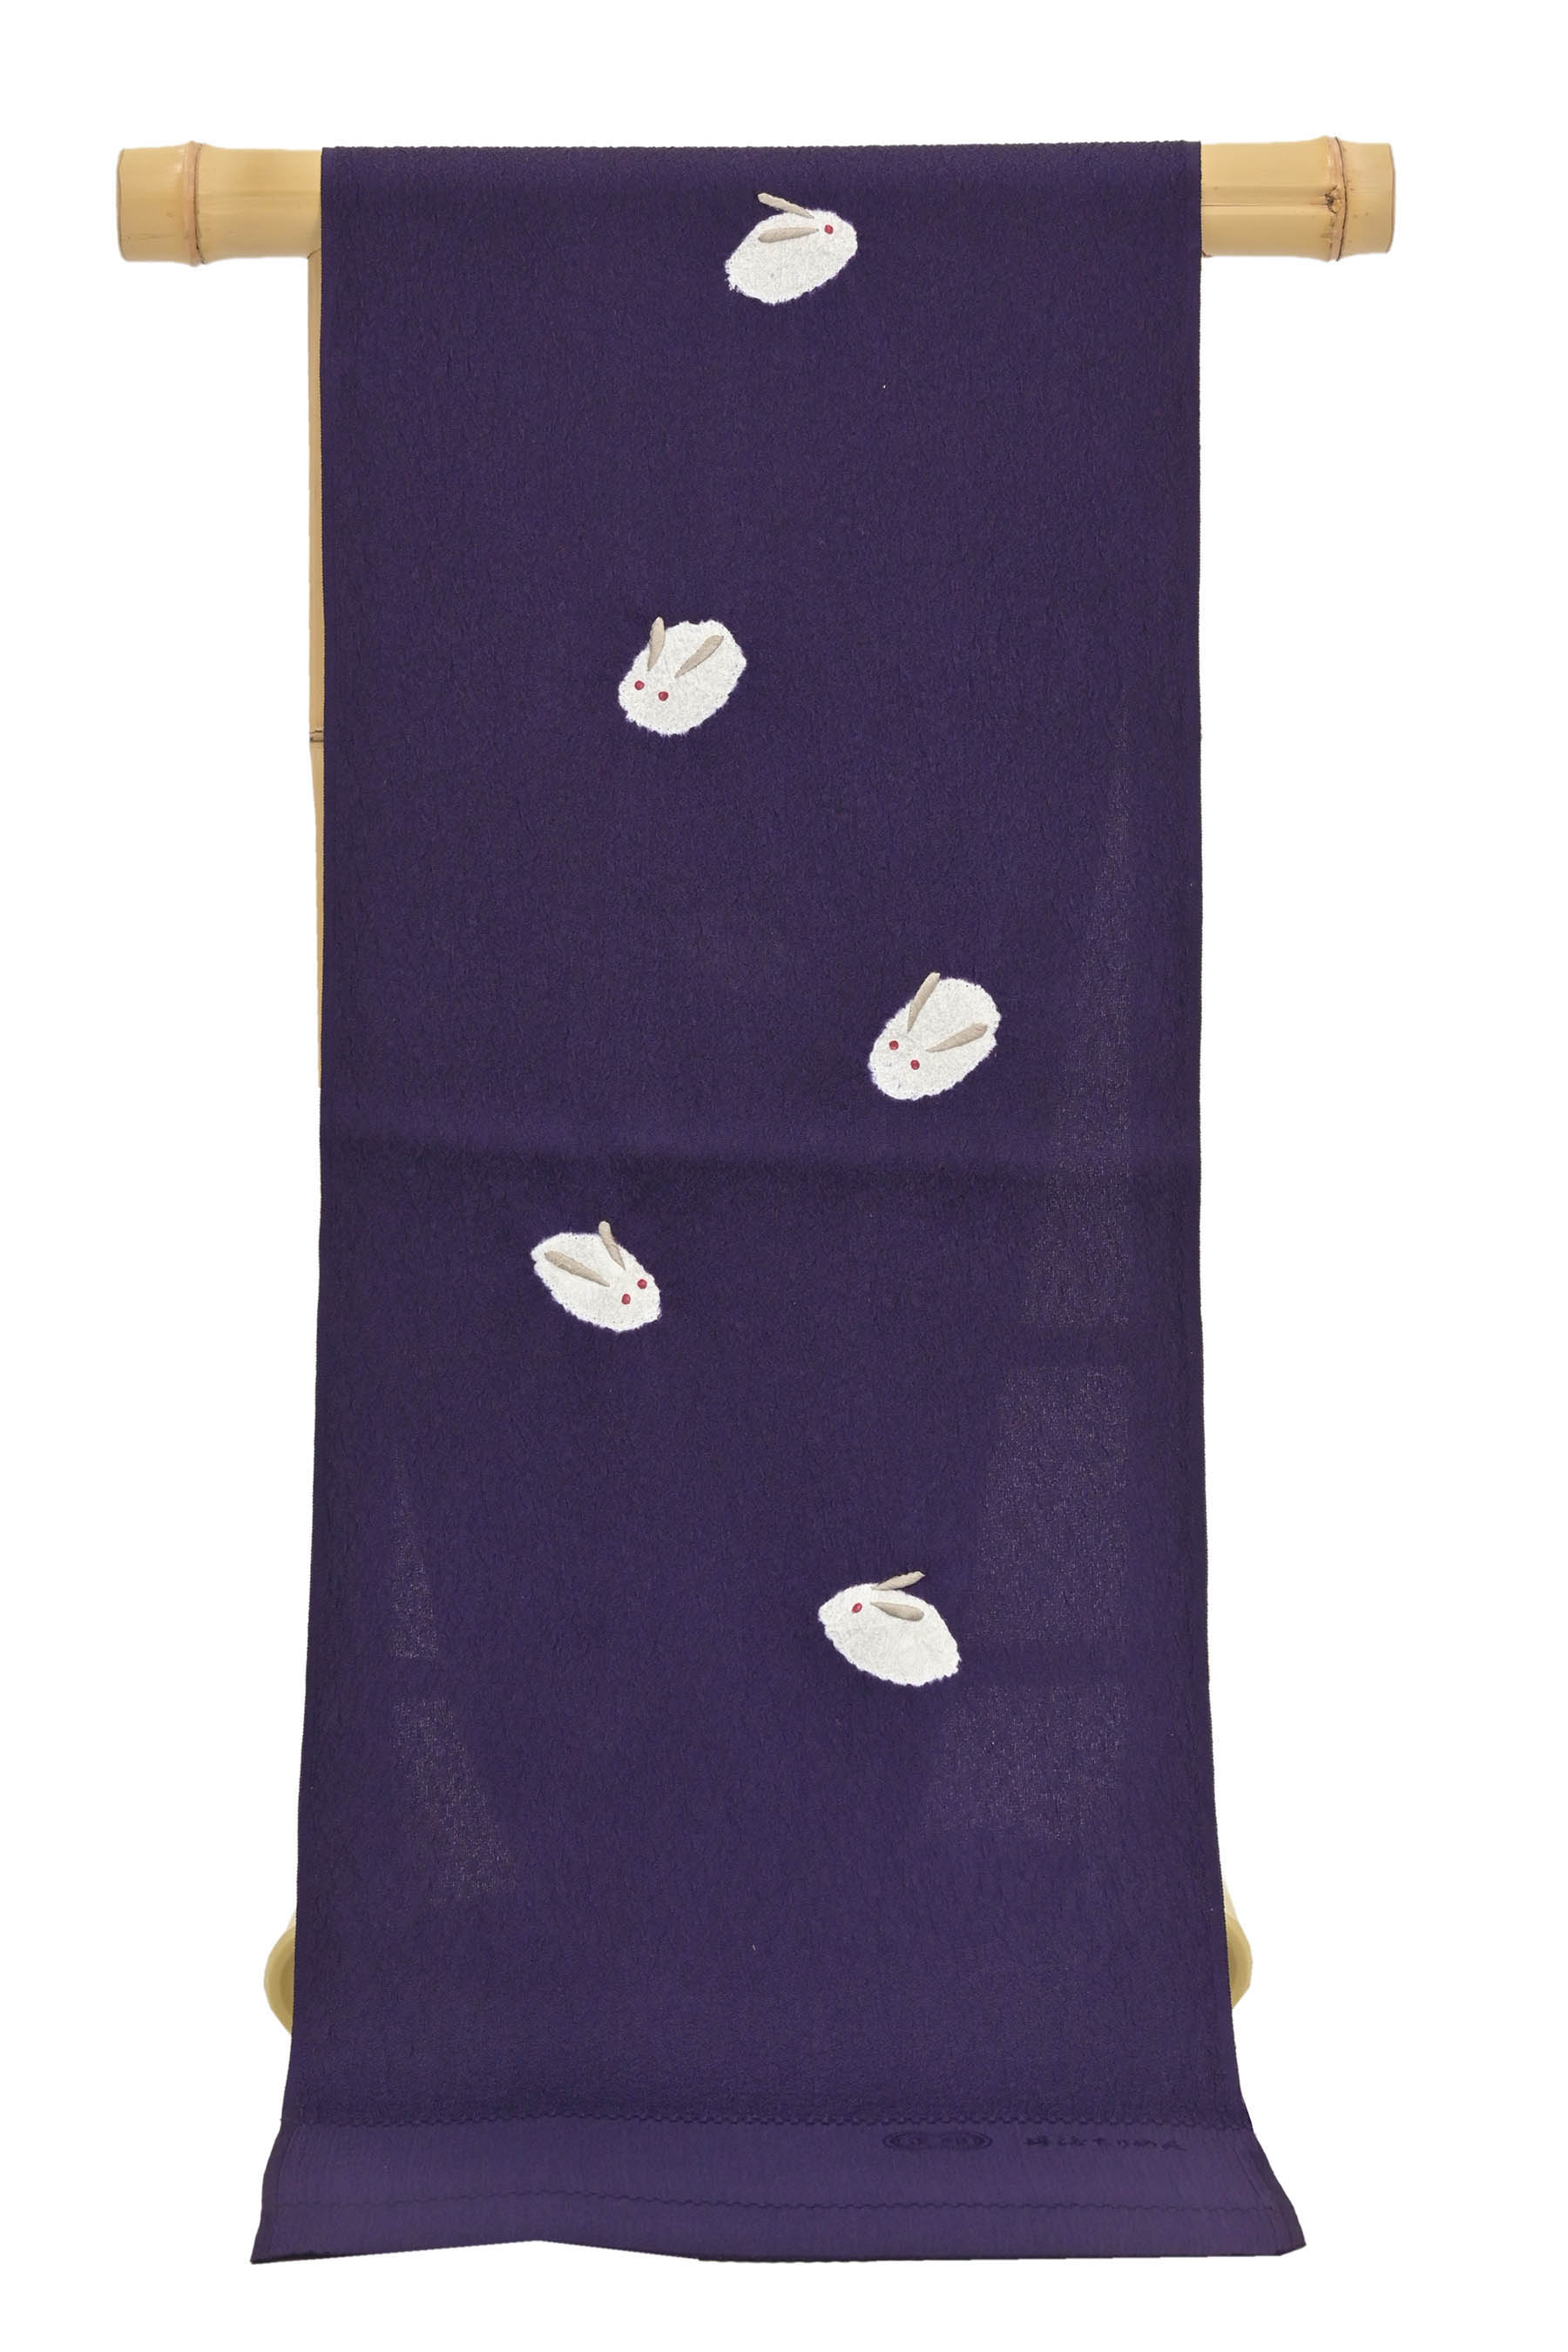 和小物さくら ハート ︎ 帯揚げ 正絹 藍白×紫 輪出し 絞り 橘地紋